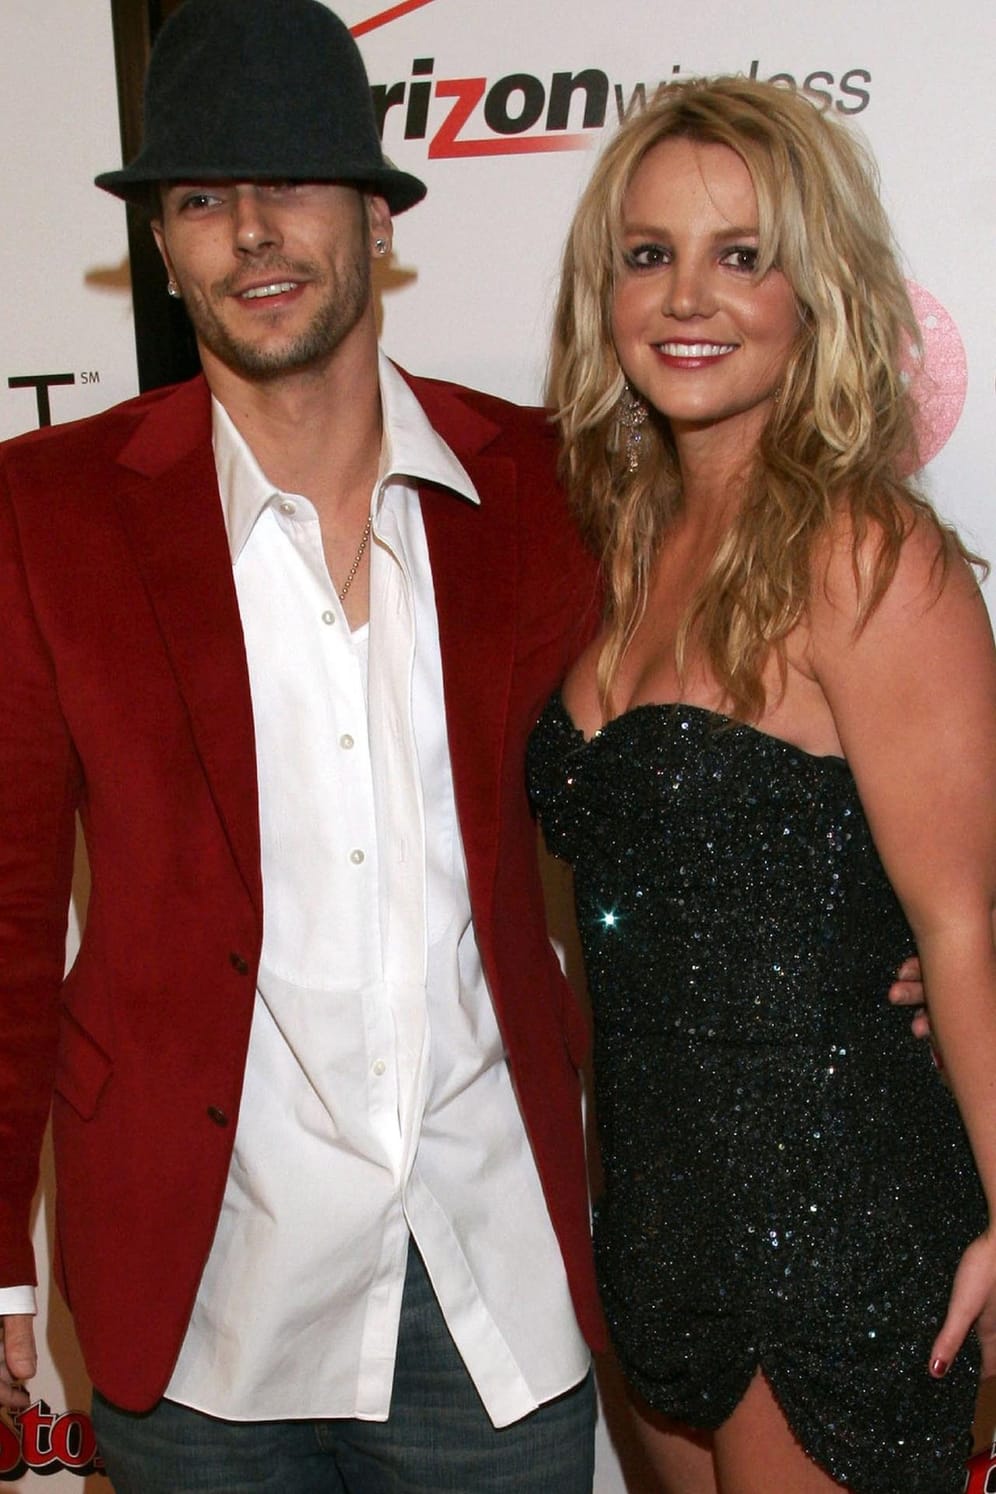 Britney Spears und Kevin Federline: Drei Jahre waren die beiden verheiratet. Nach Partyexzessen des ehemaligen Background Tänzers folgte die Trennung und der anschließende Zusammenbruch der Popsängerin. 2007 ließen sie sich scheiden.